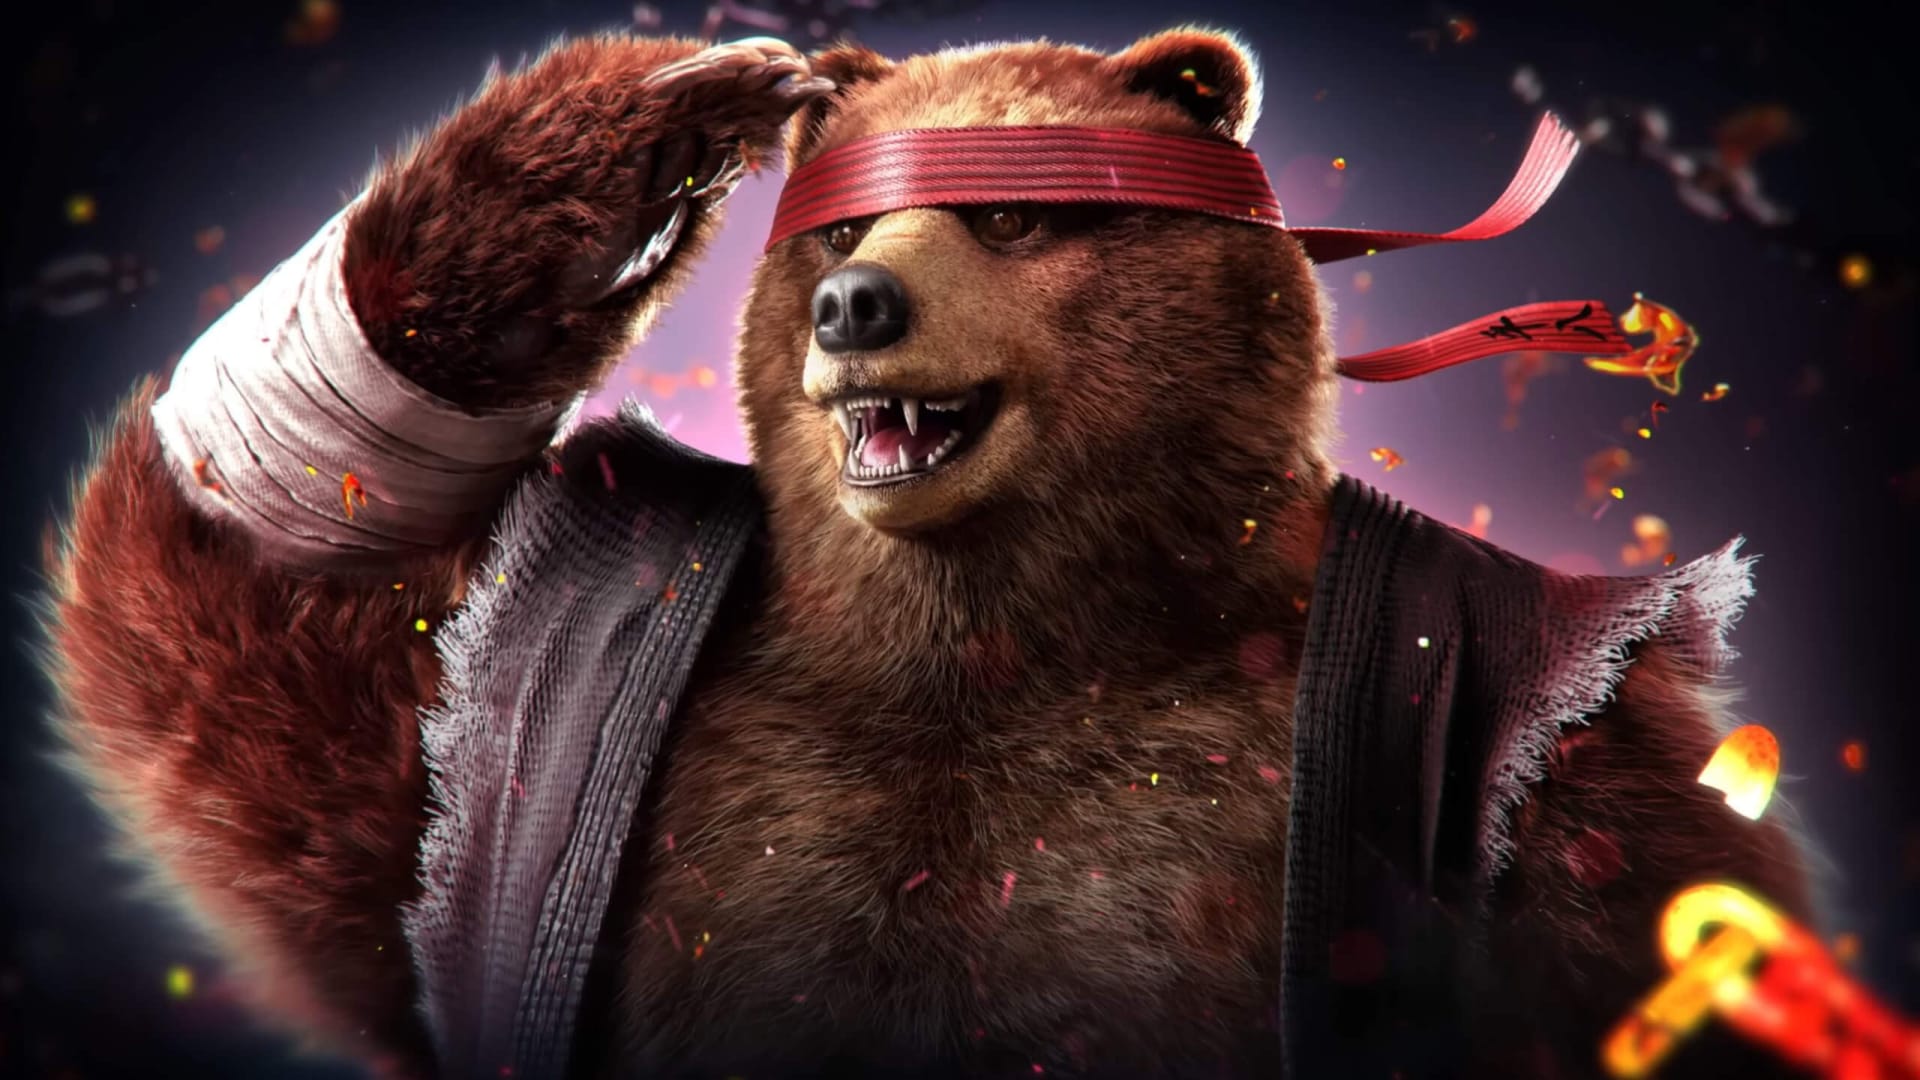 Tekken 8 Kuma Gameplay Trailer Shows the Power of Bear Fists